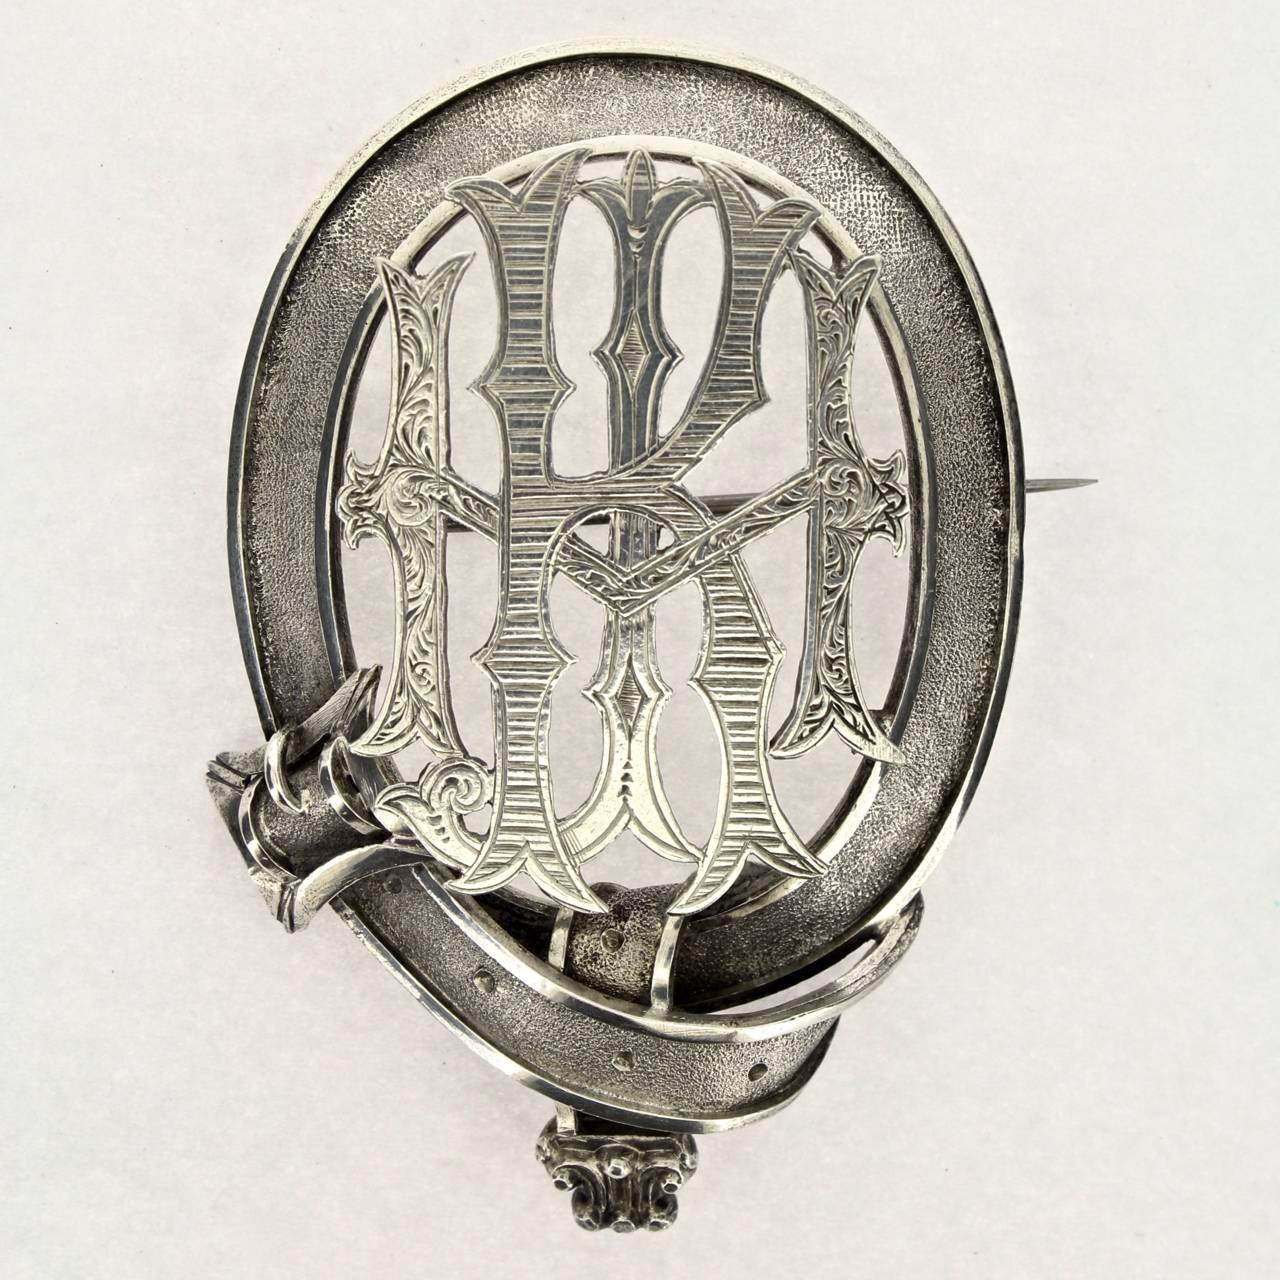 Eine große figurale viktorianische Silberschnallenbrosche mit Monogramm. 

Die Brosche ist noch in der Originalverpackung. 

Die Rückseite ist nicht beschriftet. Das Silber wird wahrscheinlich entweder als Münzsilber oder Sterlingsilber eingestuft.